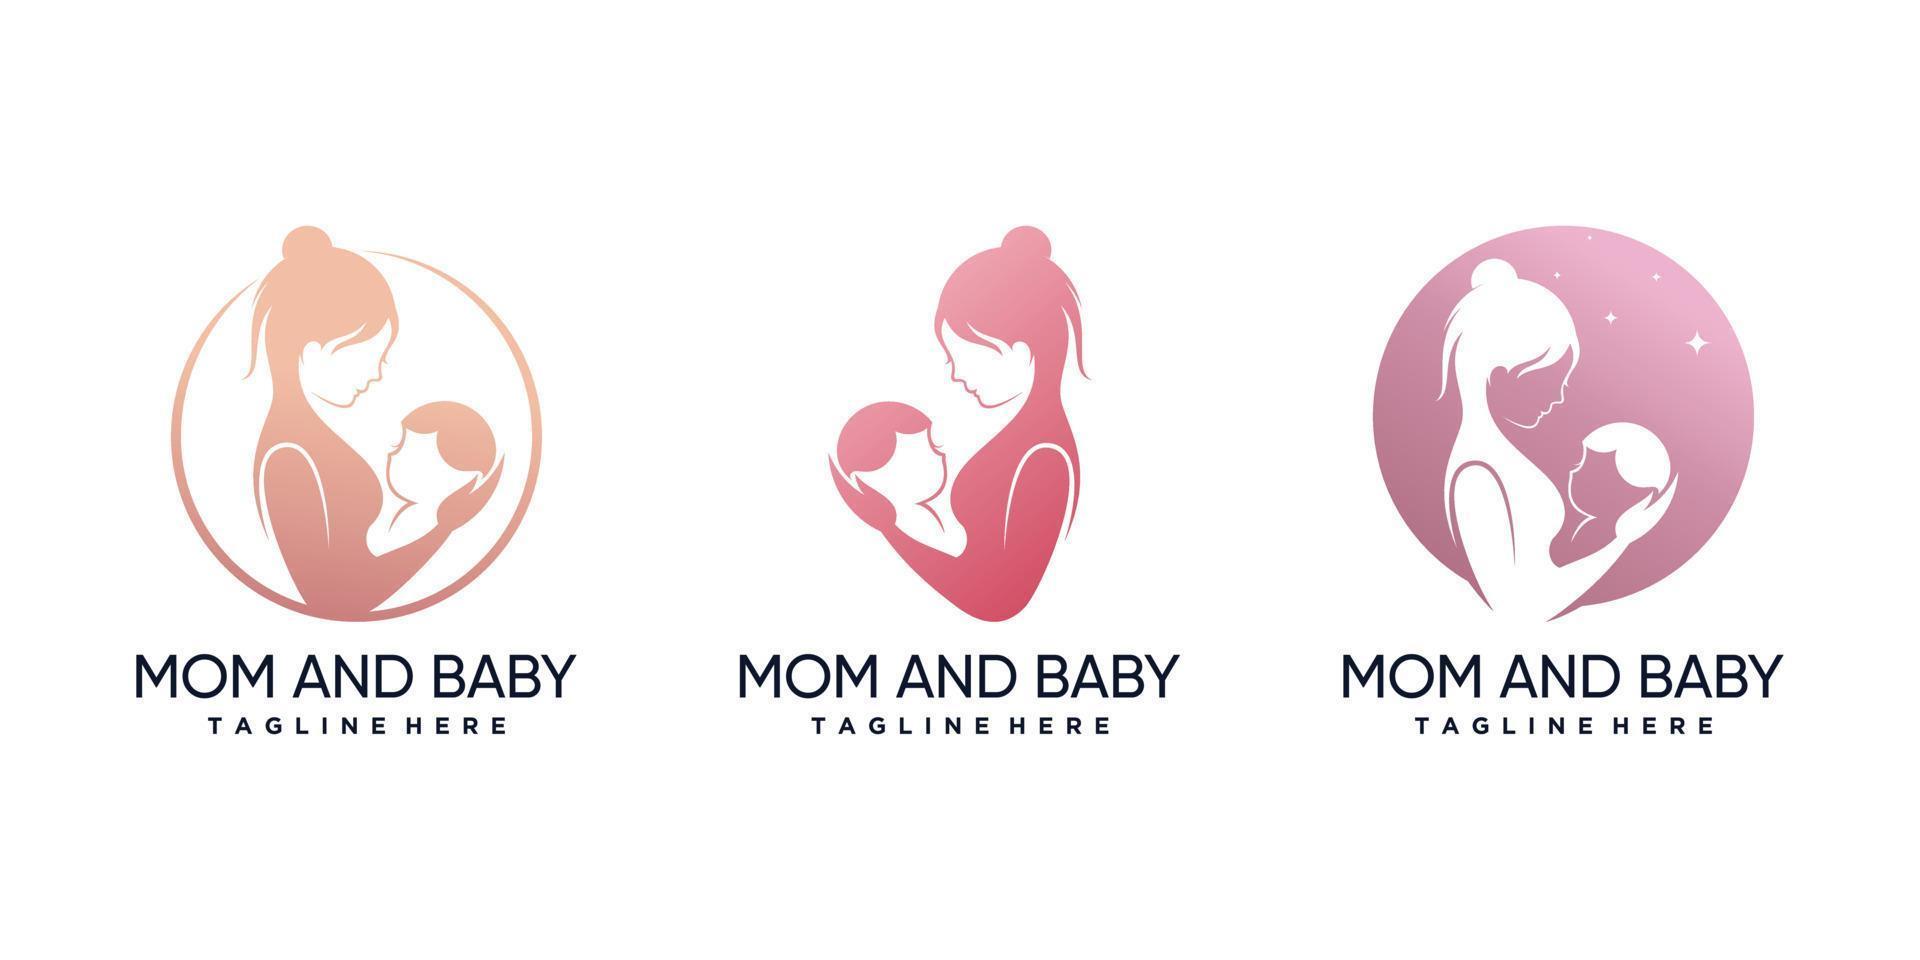 conjunto de plantilla de diseño de logotipo de mamá y bebé con vector premium de elemento creativo